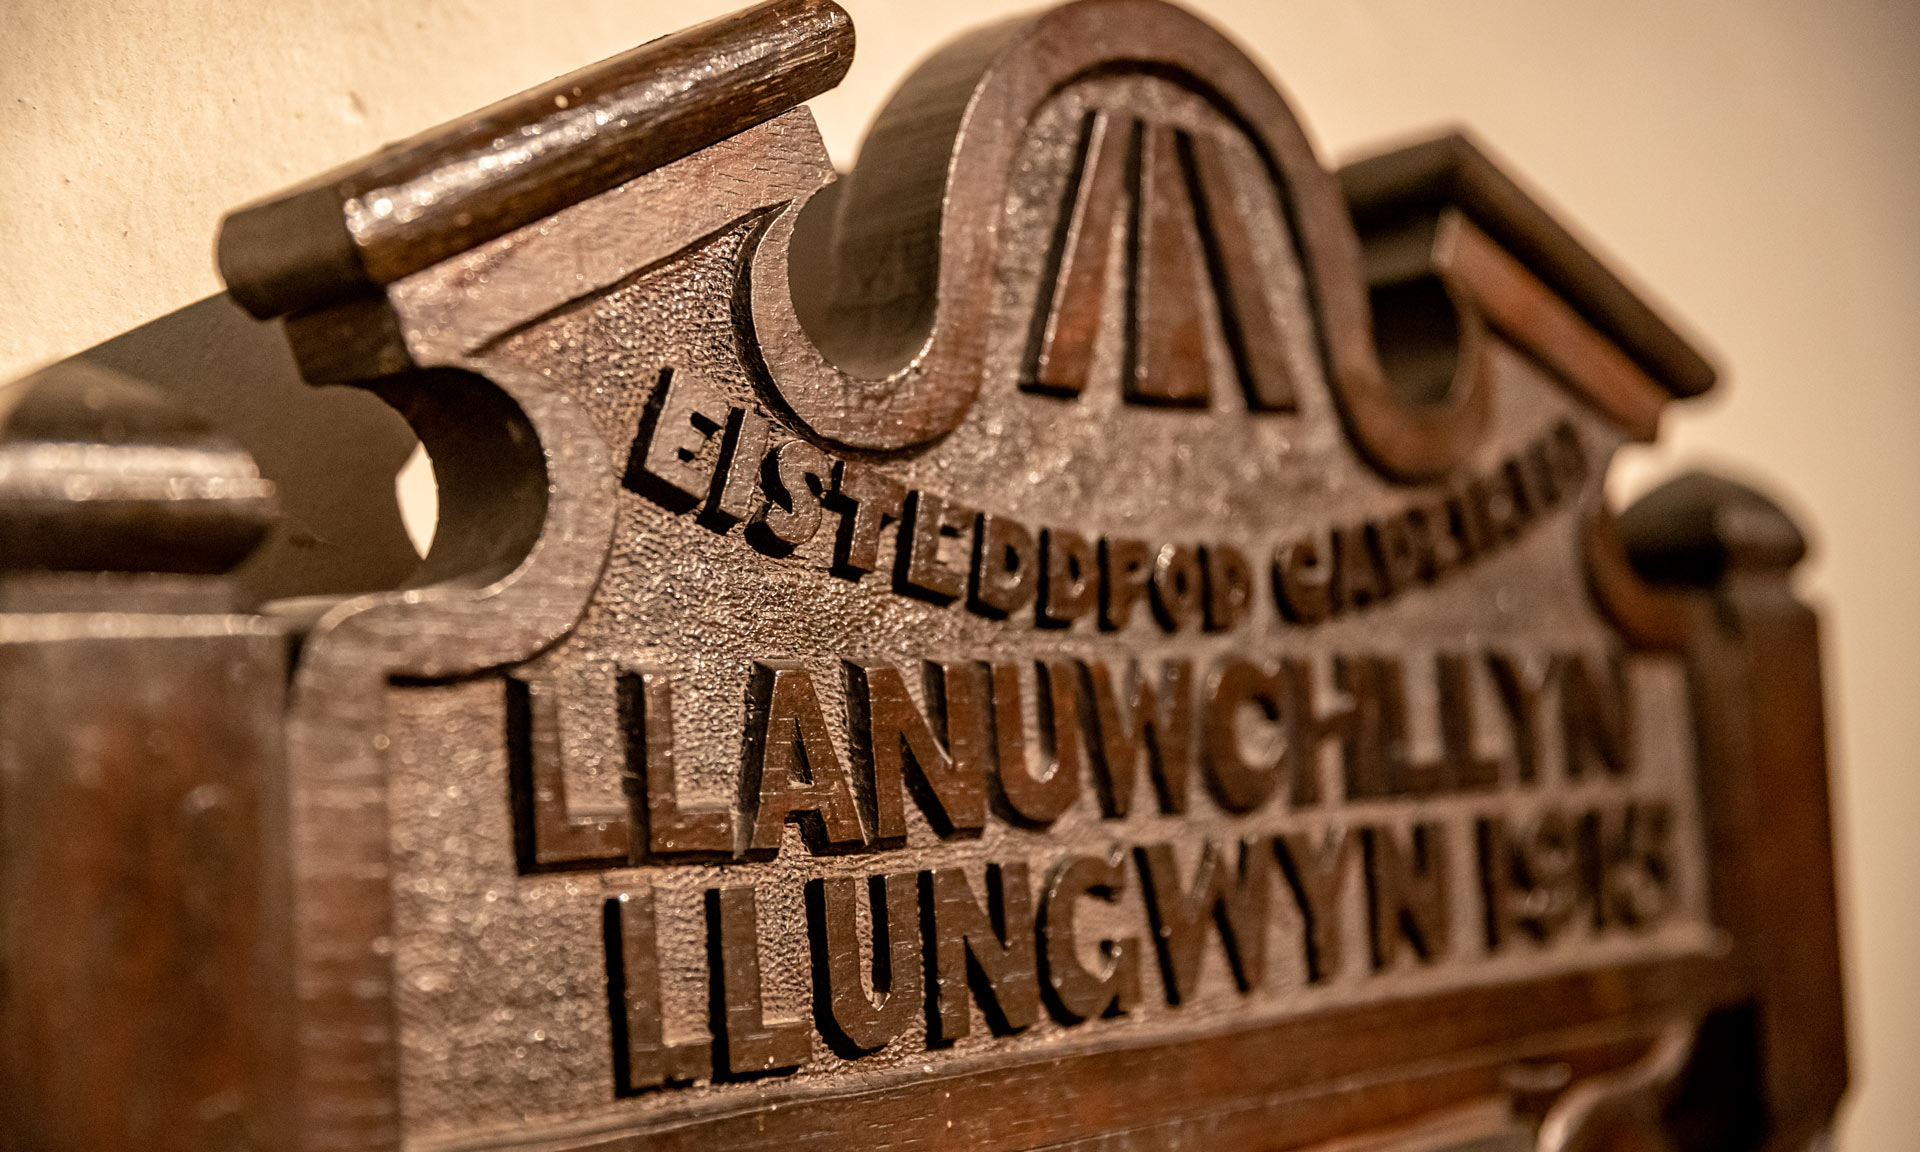 Eisteddfod Llanuwchllyn 1915